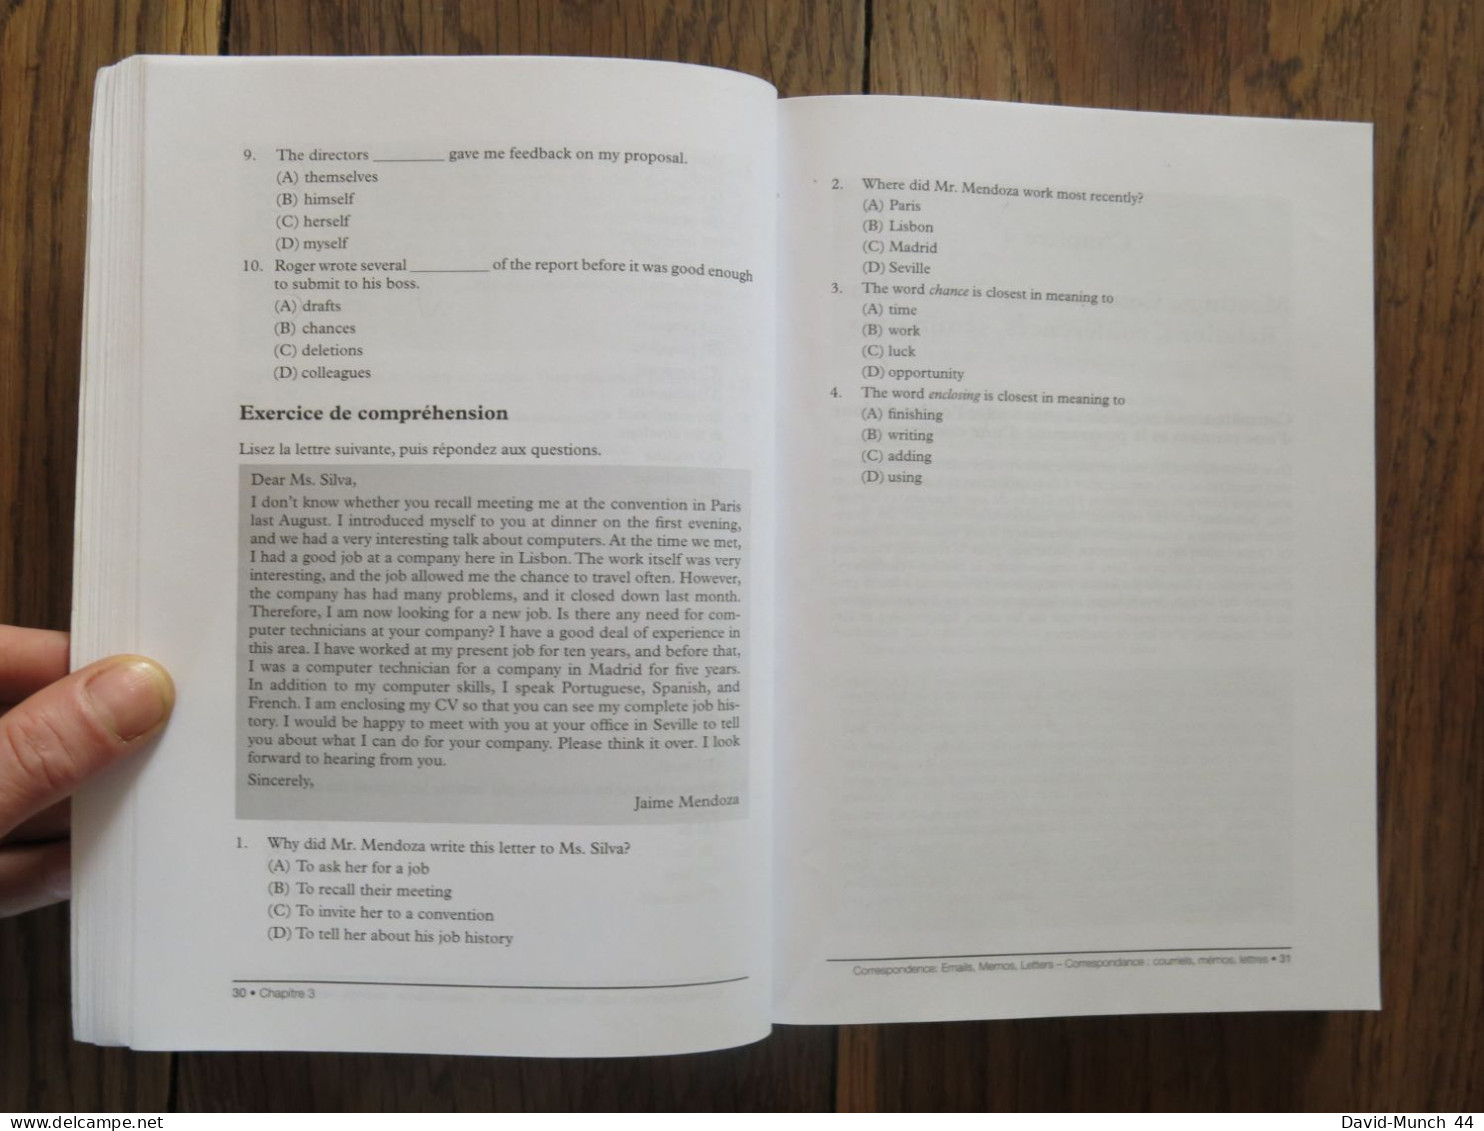 Vocabulaire et grammaire pour le TOEIC 2e édition de Lin Lougheed. Pearson. 2014